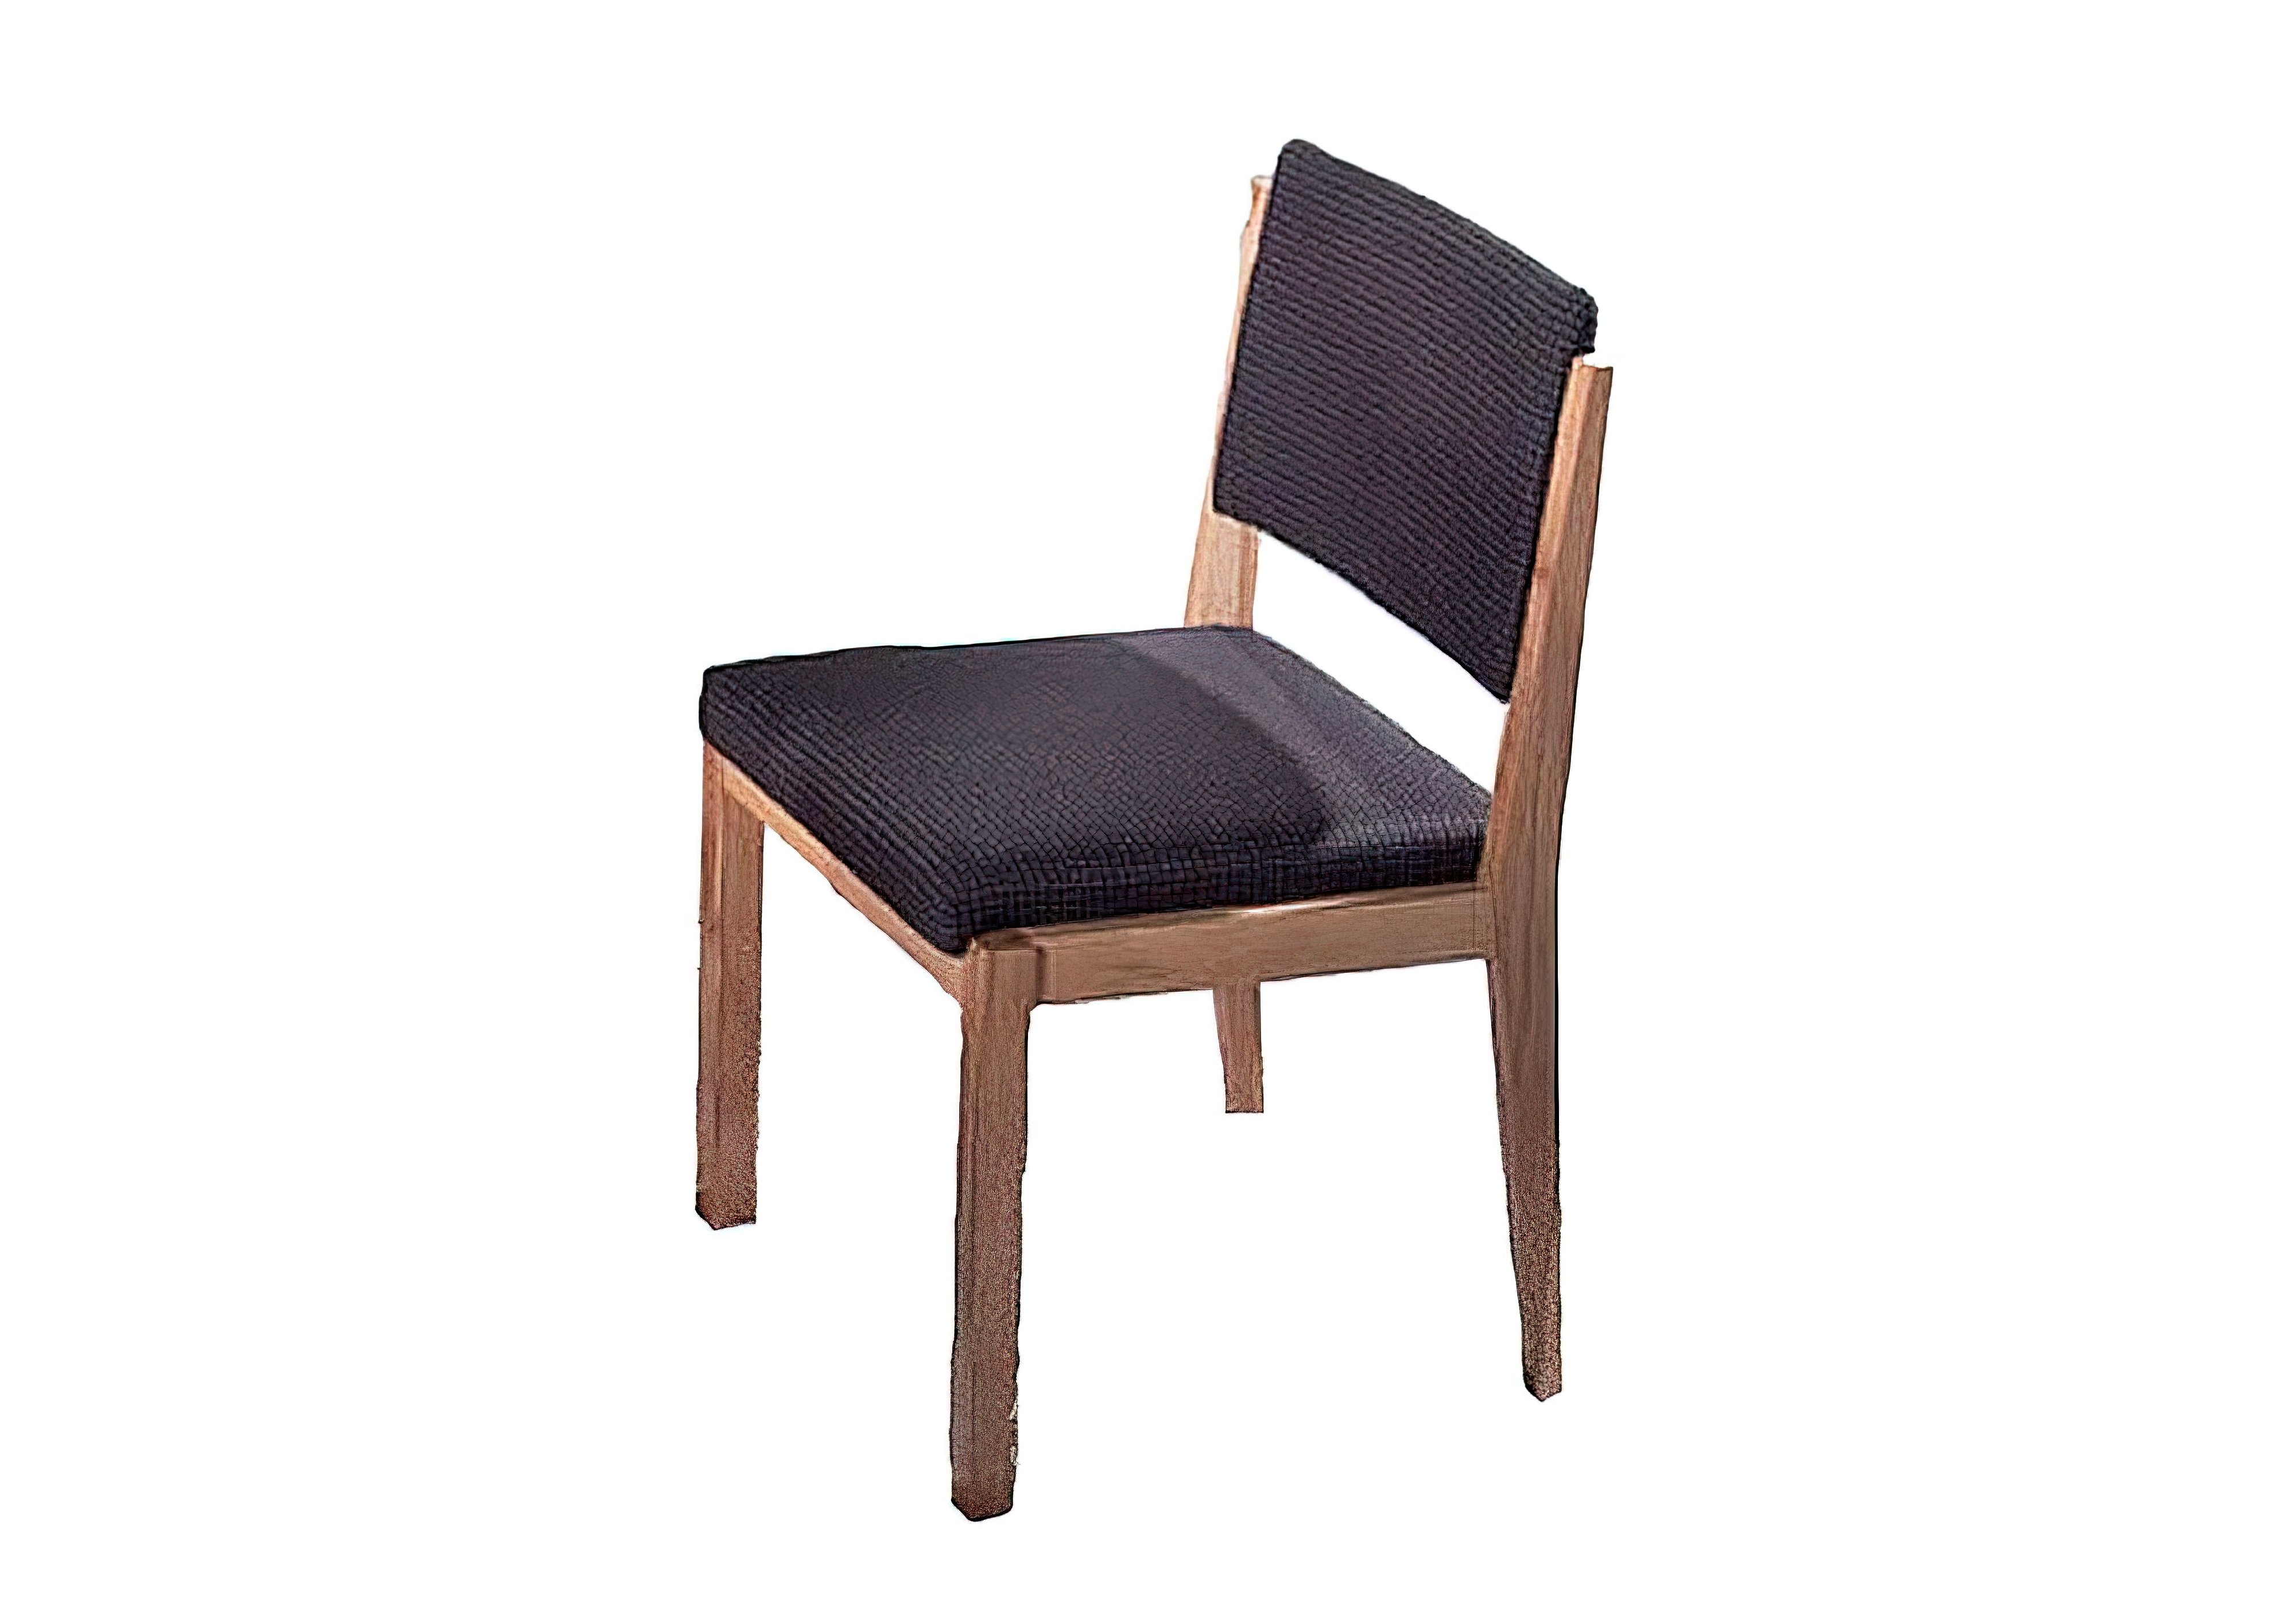 Кухонный стул Виктор-8 Ливс, Тип Обеденный, Высота 80см, Ширина сиденья 46см